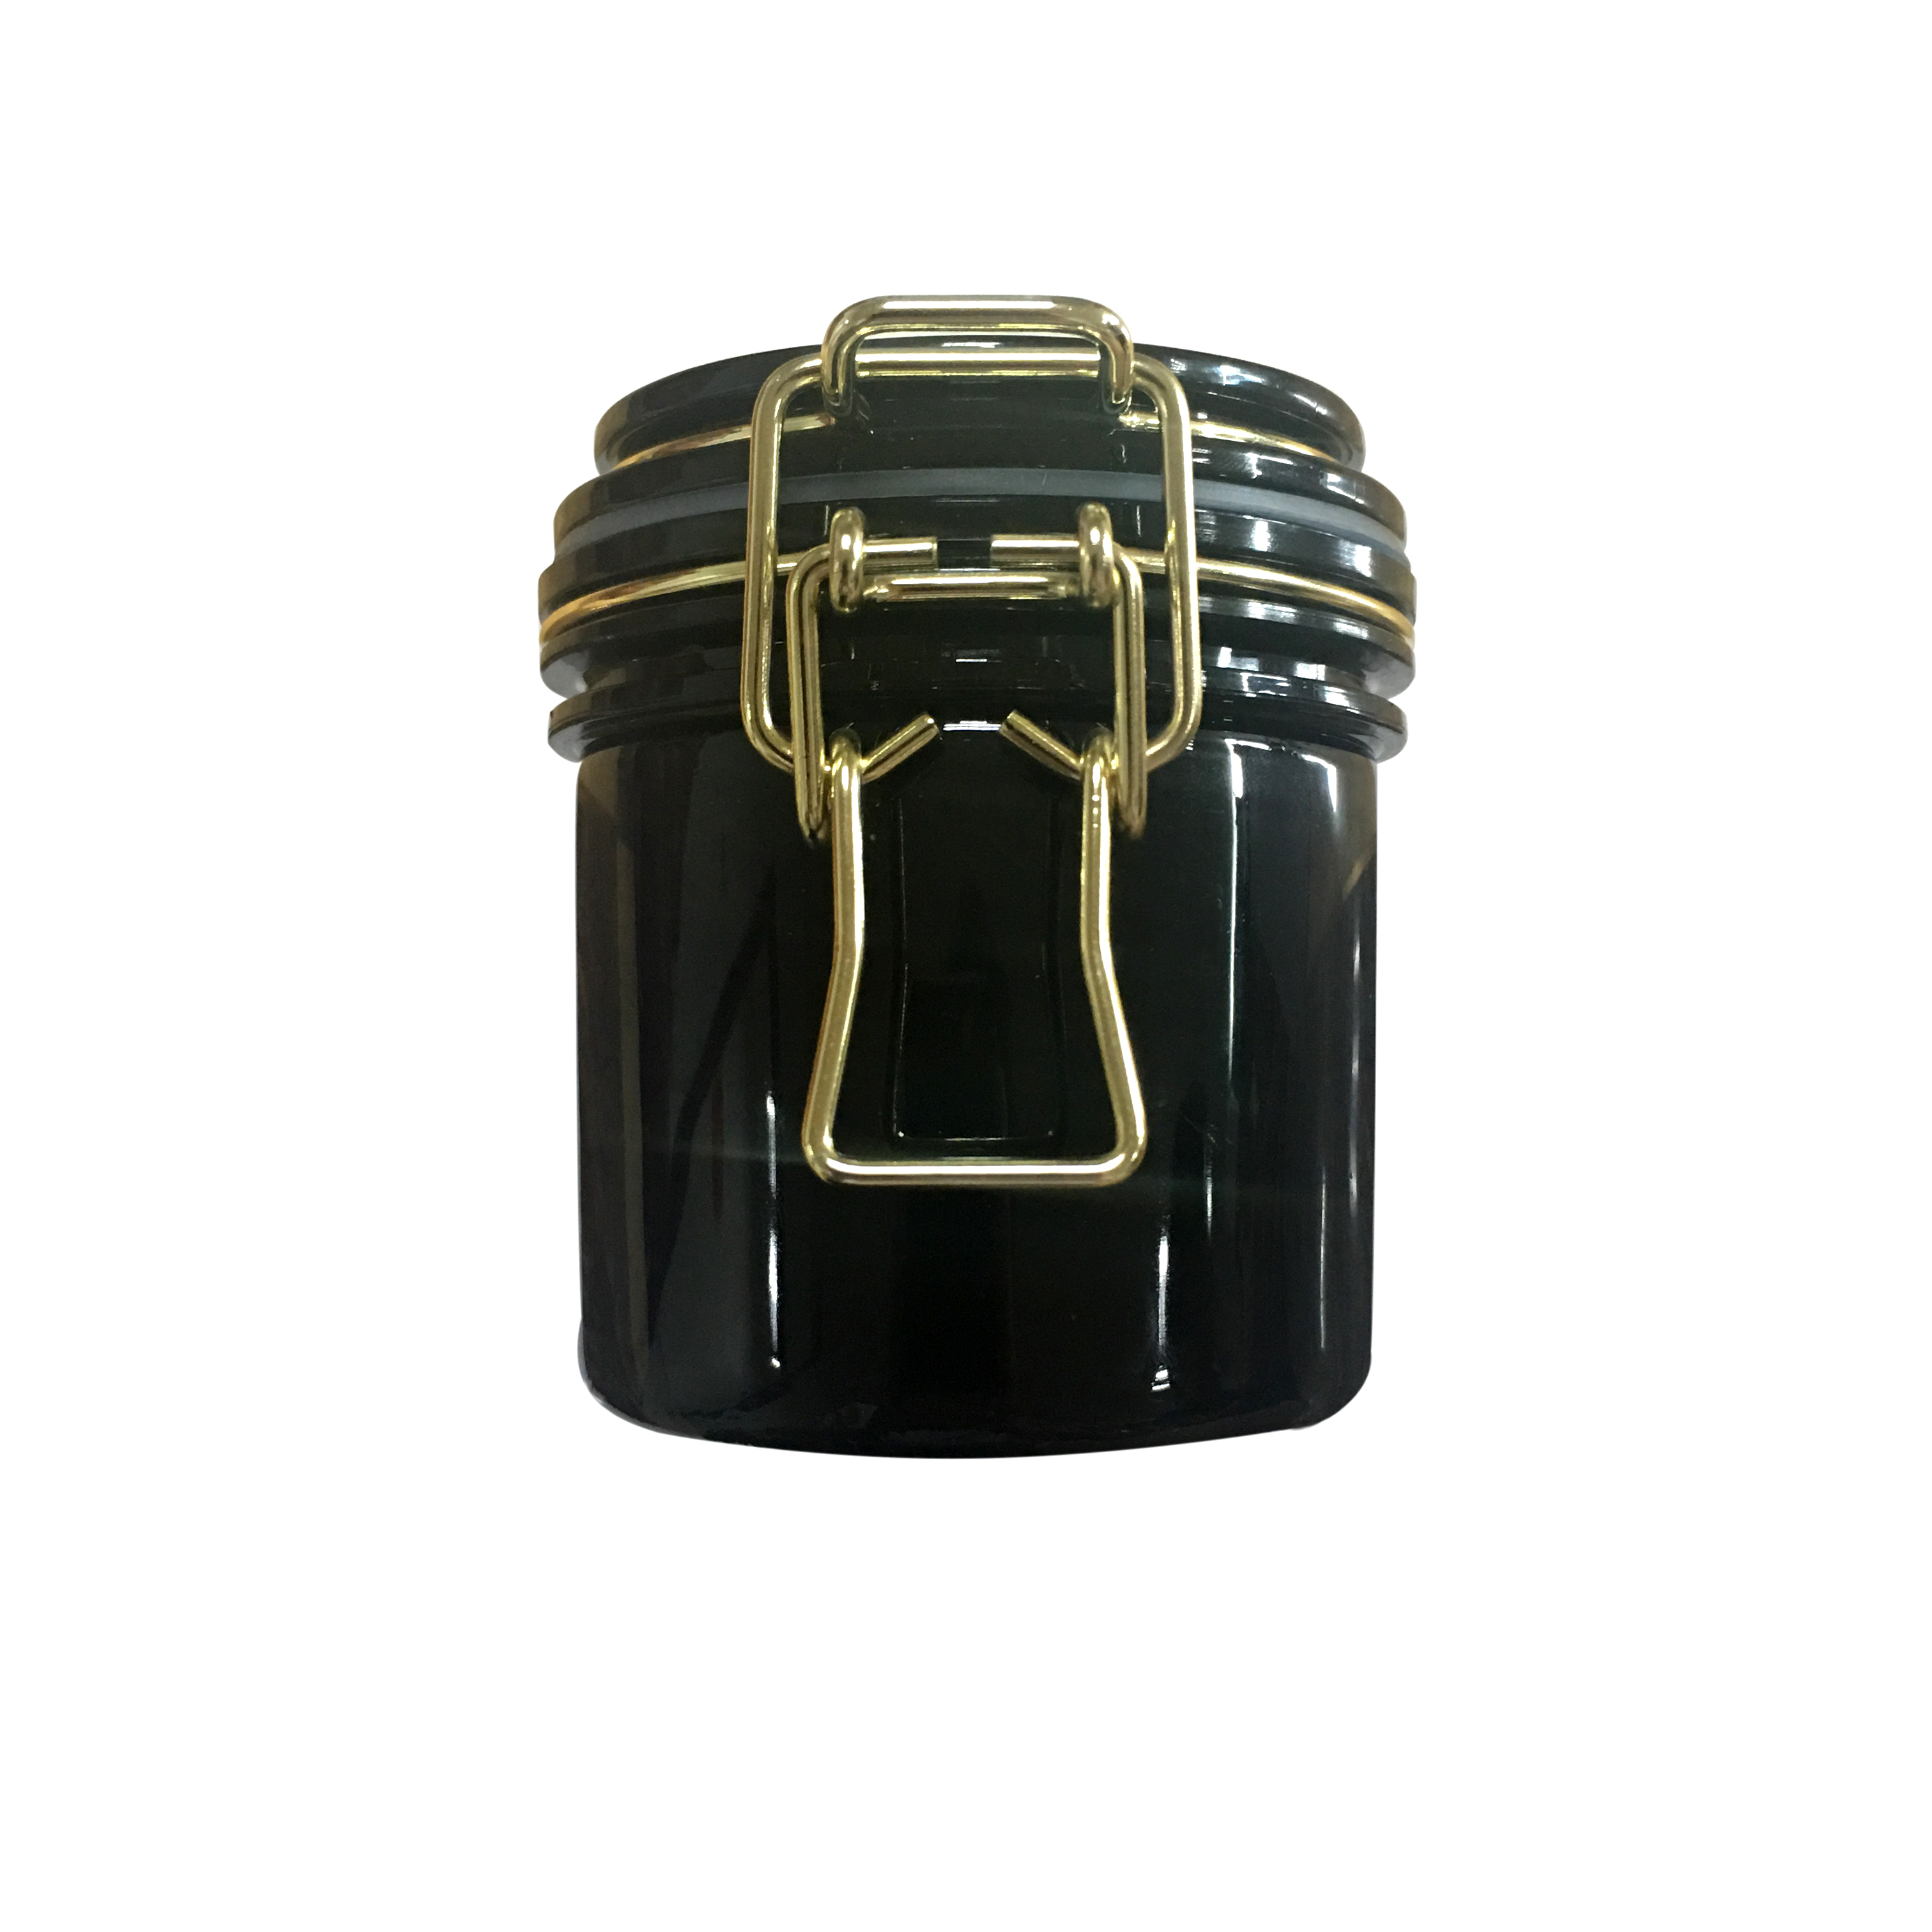 Опарник консервной упаковки маски еды черного ЛЮБИМЦА пластиковый косметический с проводом металла золота